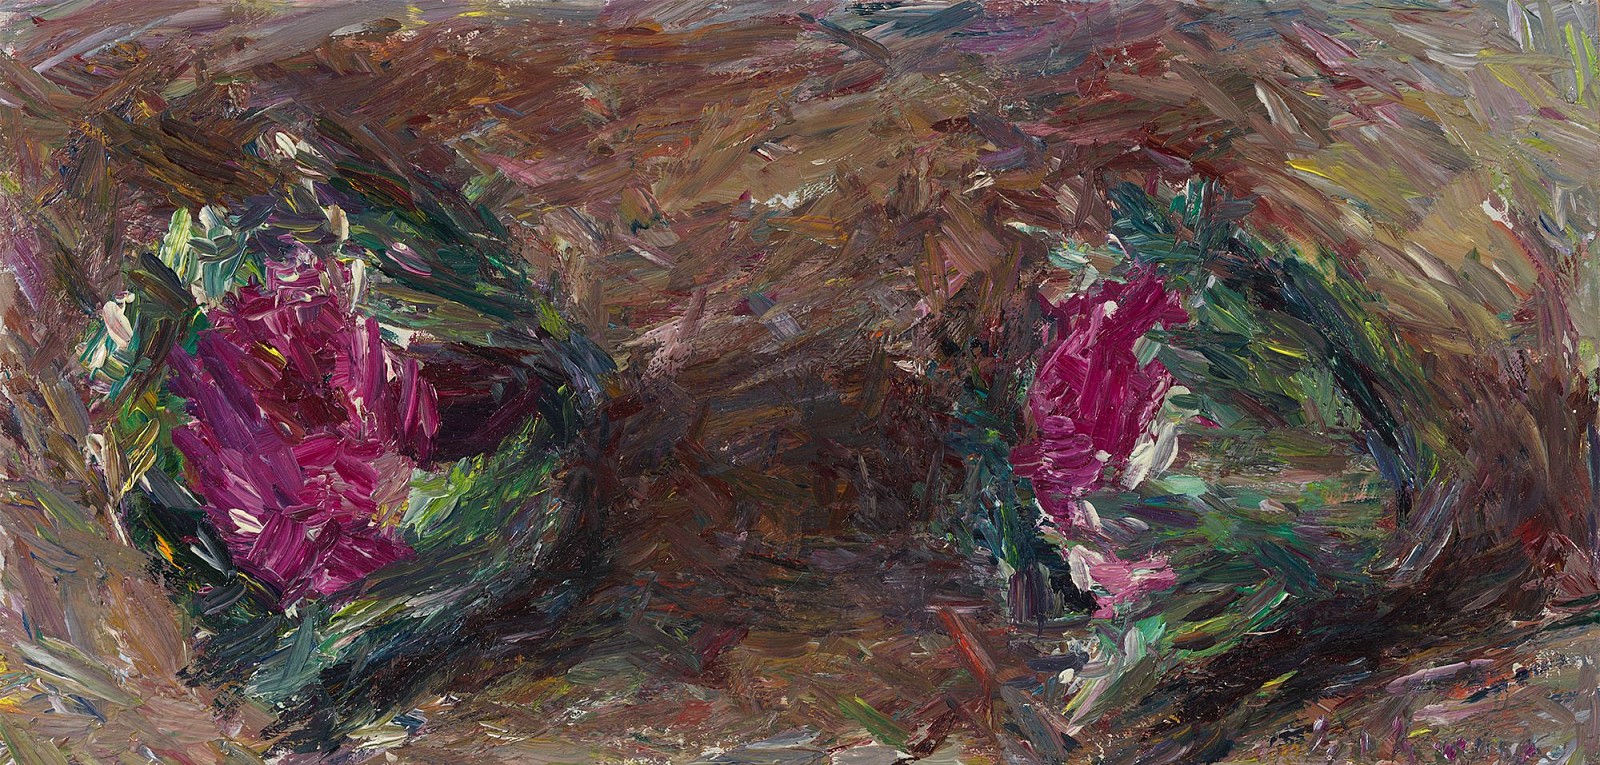 Daniel Enkaoua, Les deux choux violets
2022, Oil on canvas mounted on wood